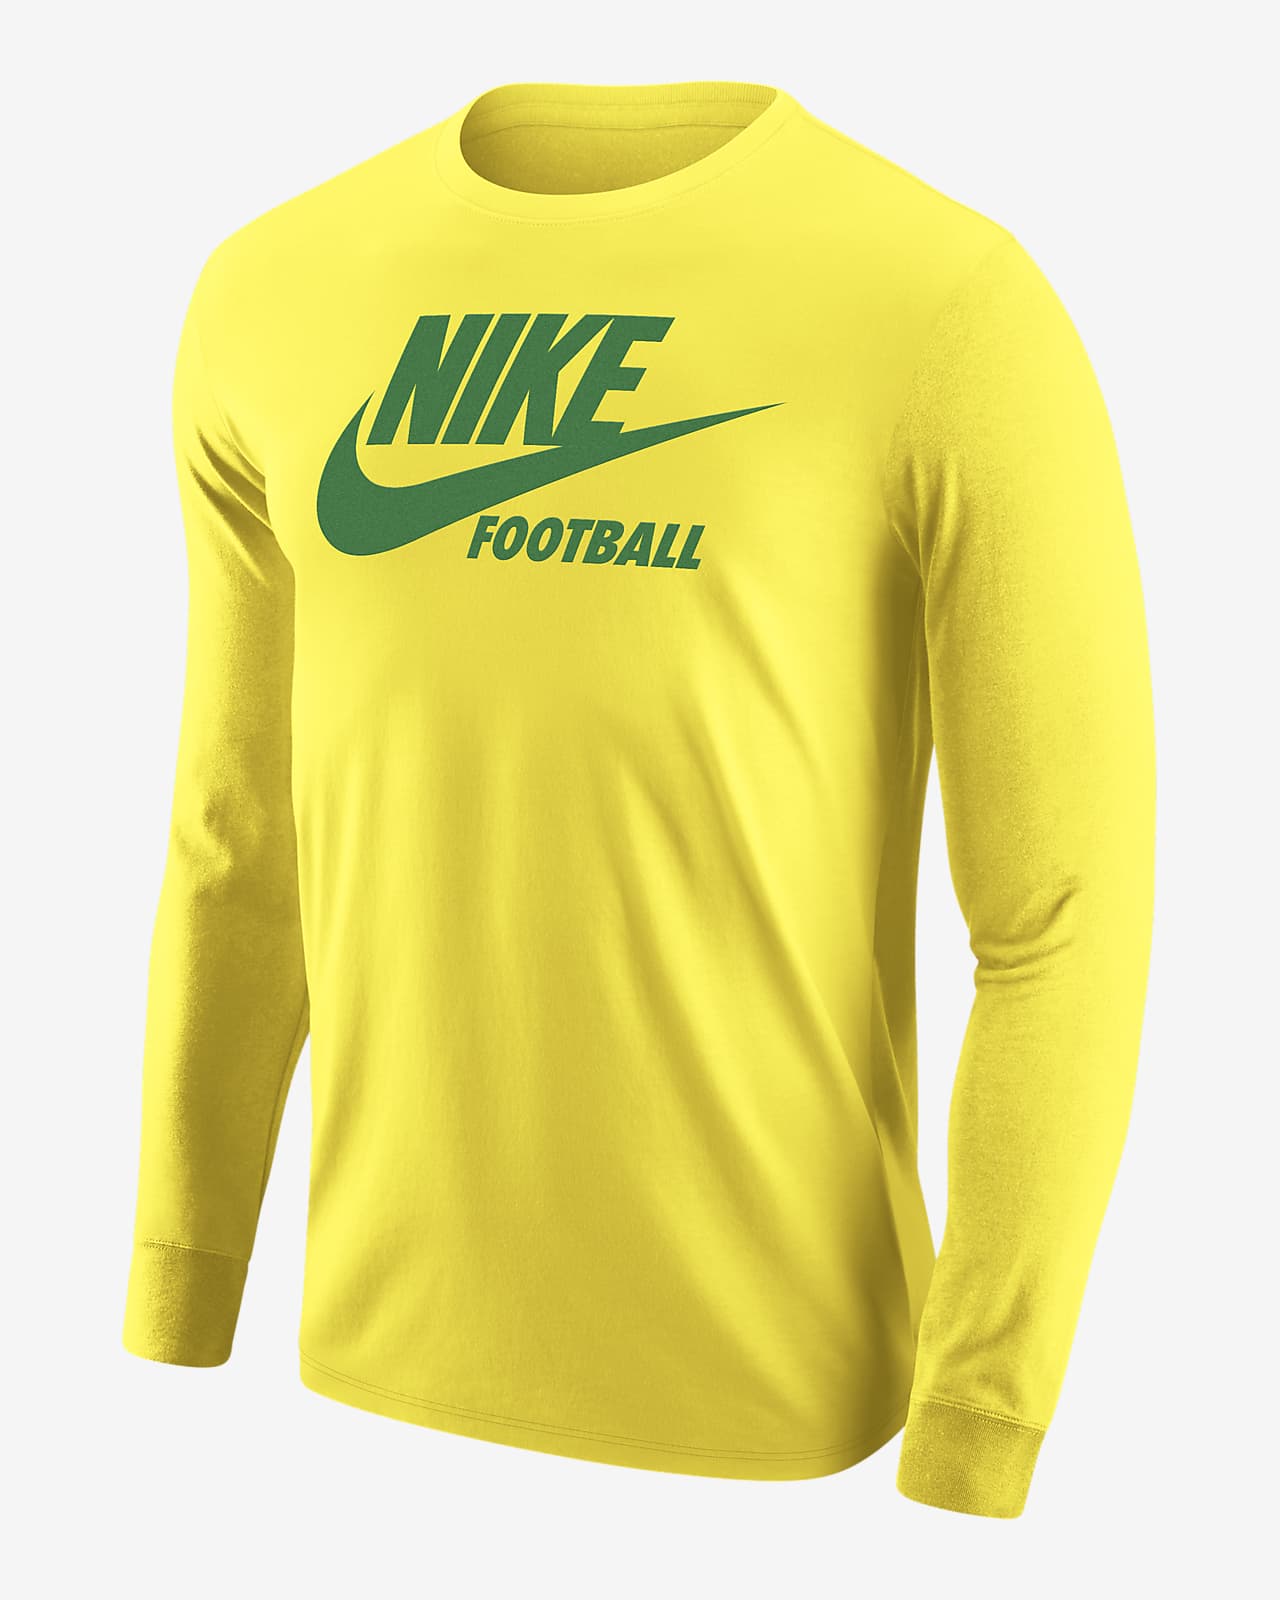 Nike Football Men's Dri-FIT Long-Sleeve T-Shirt